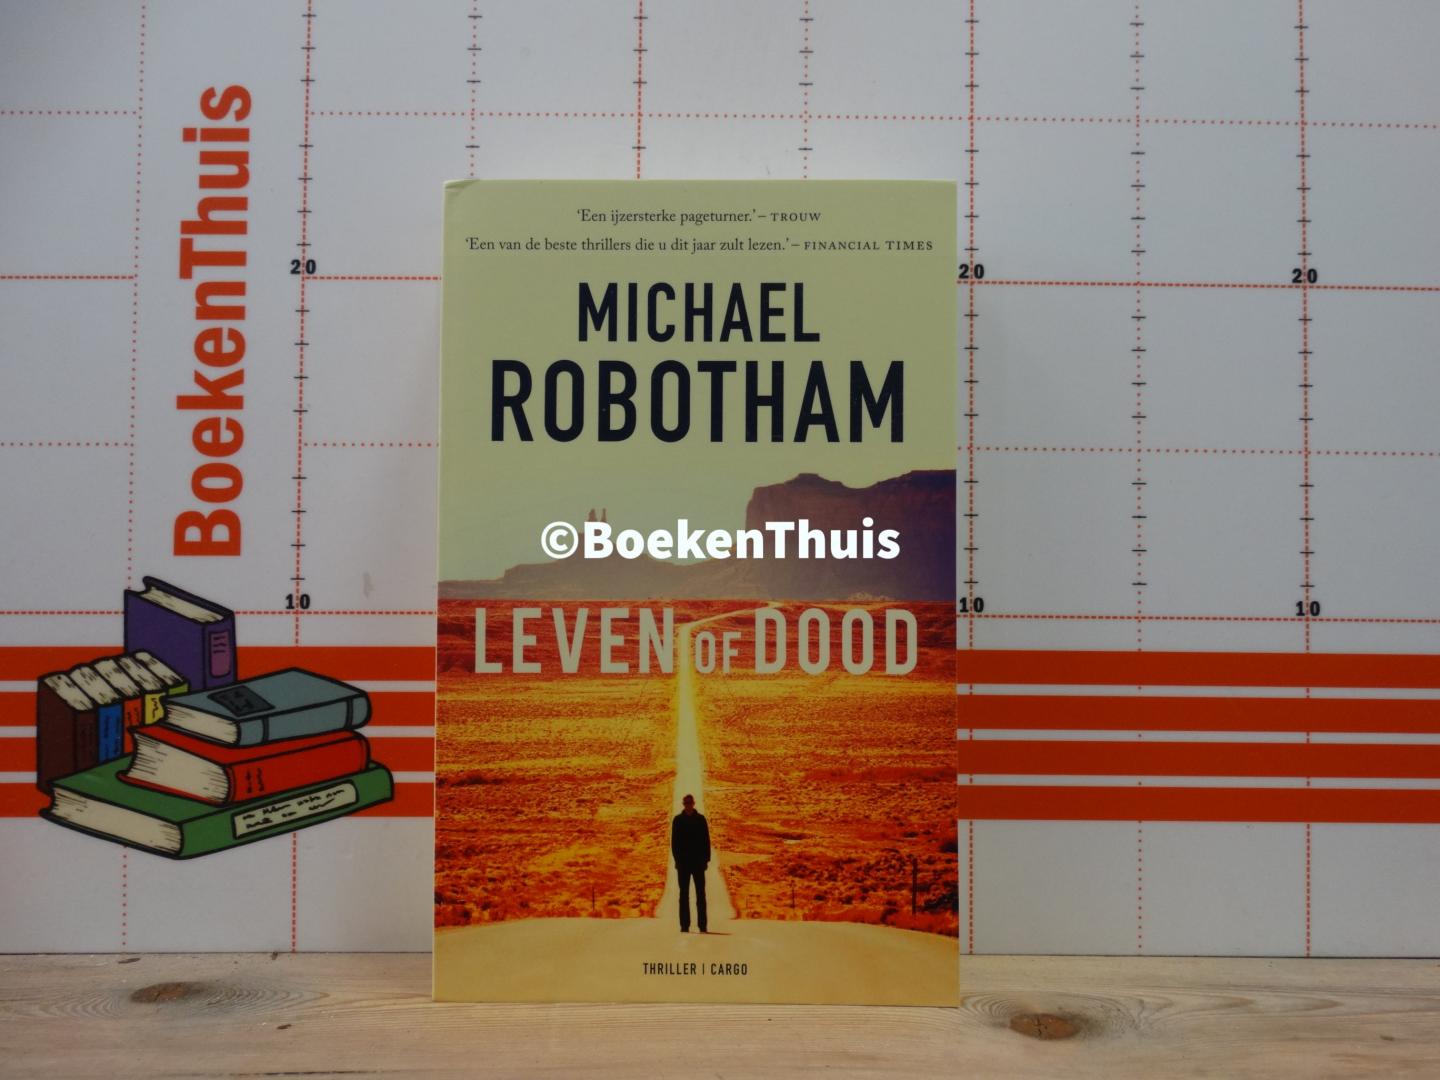 Robotham, Michael - leven of dood